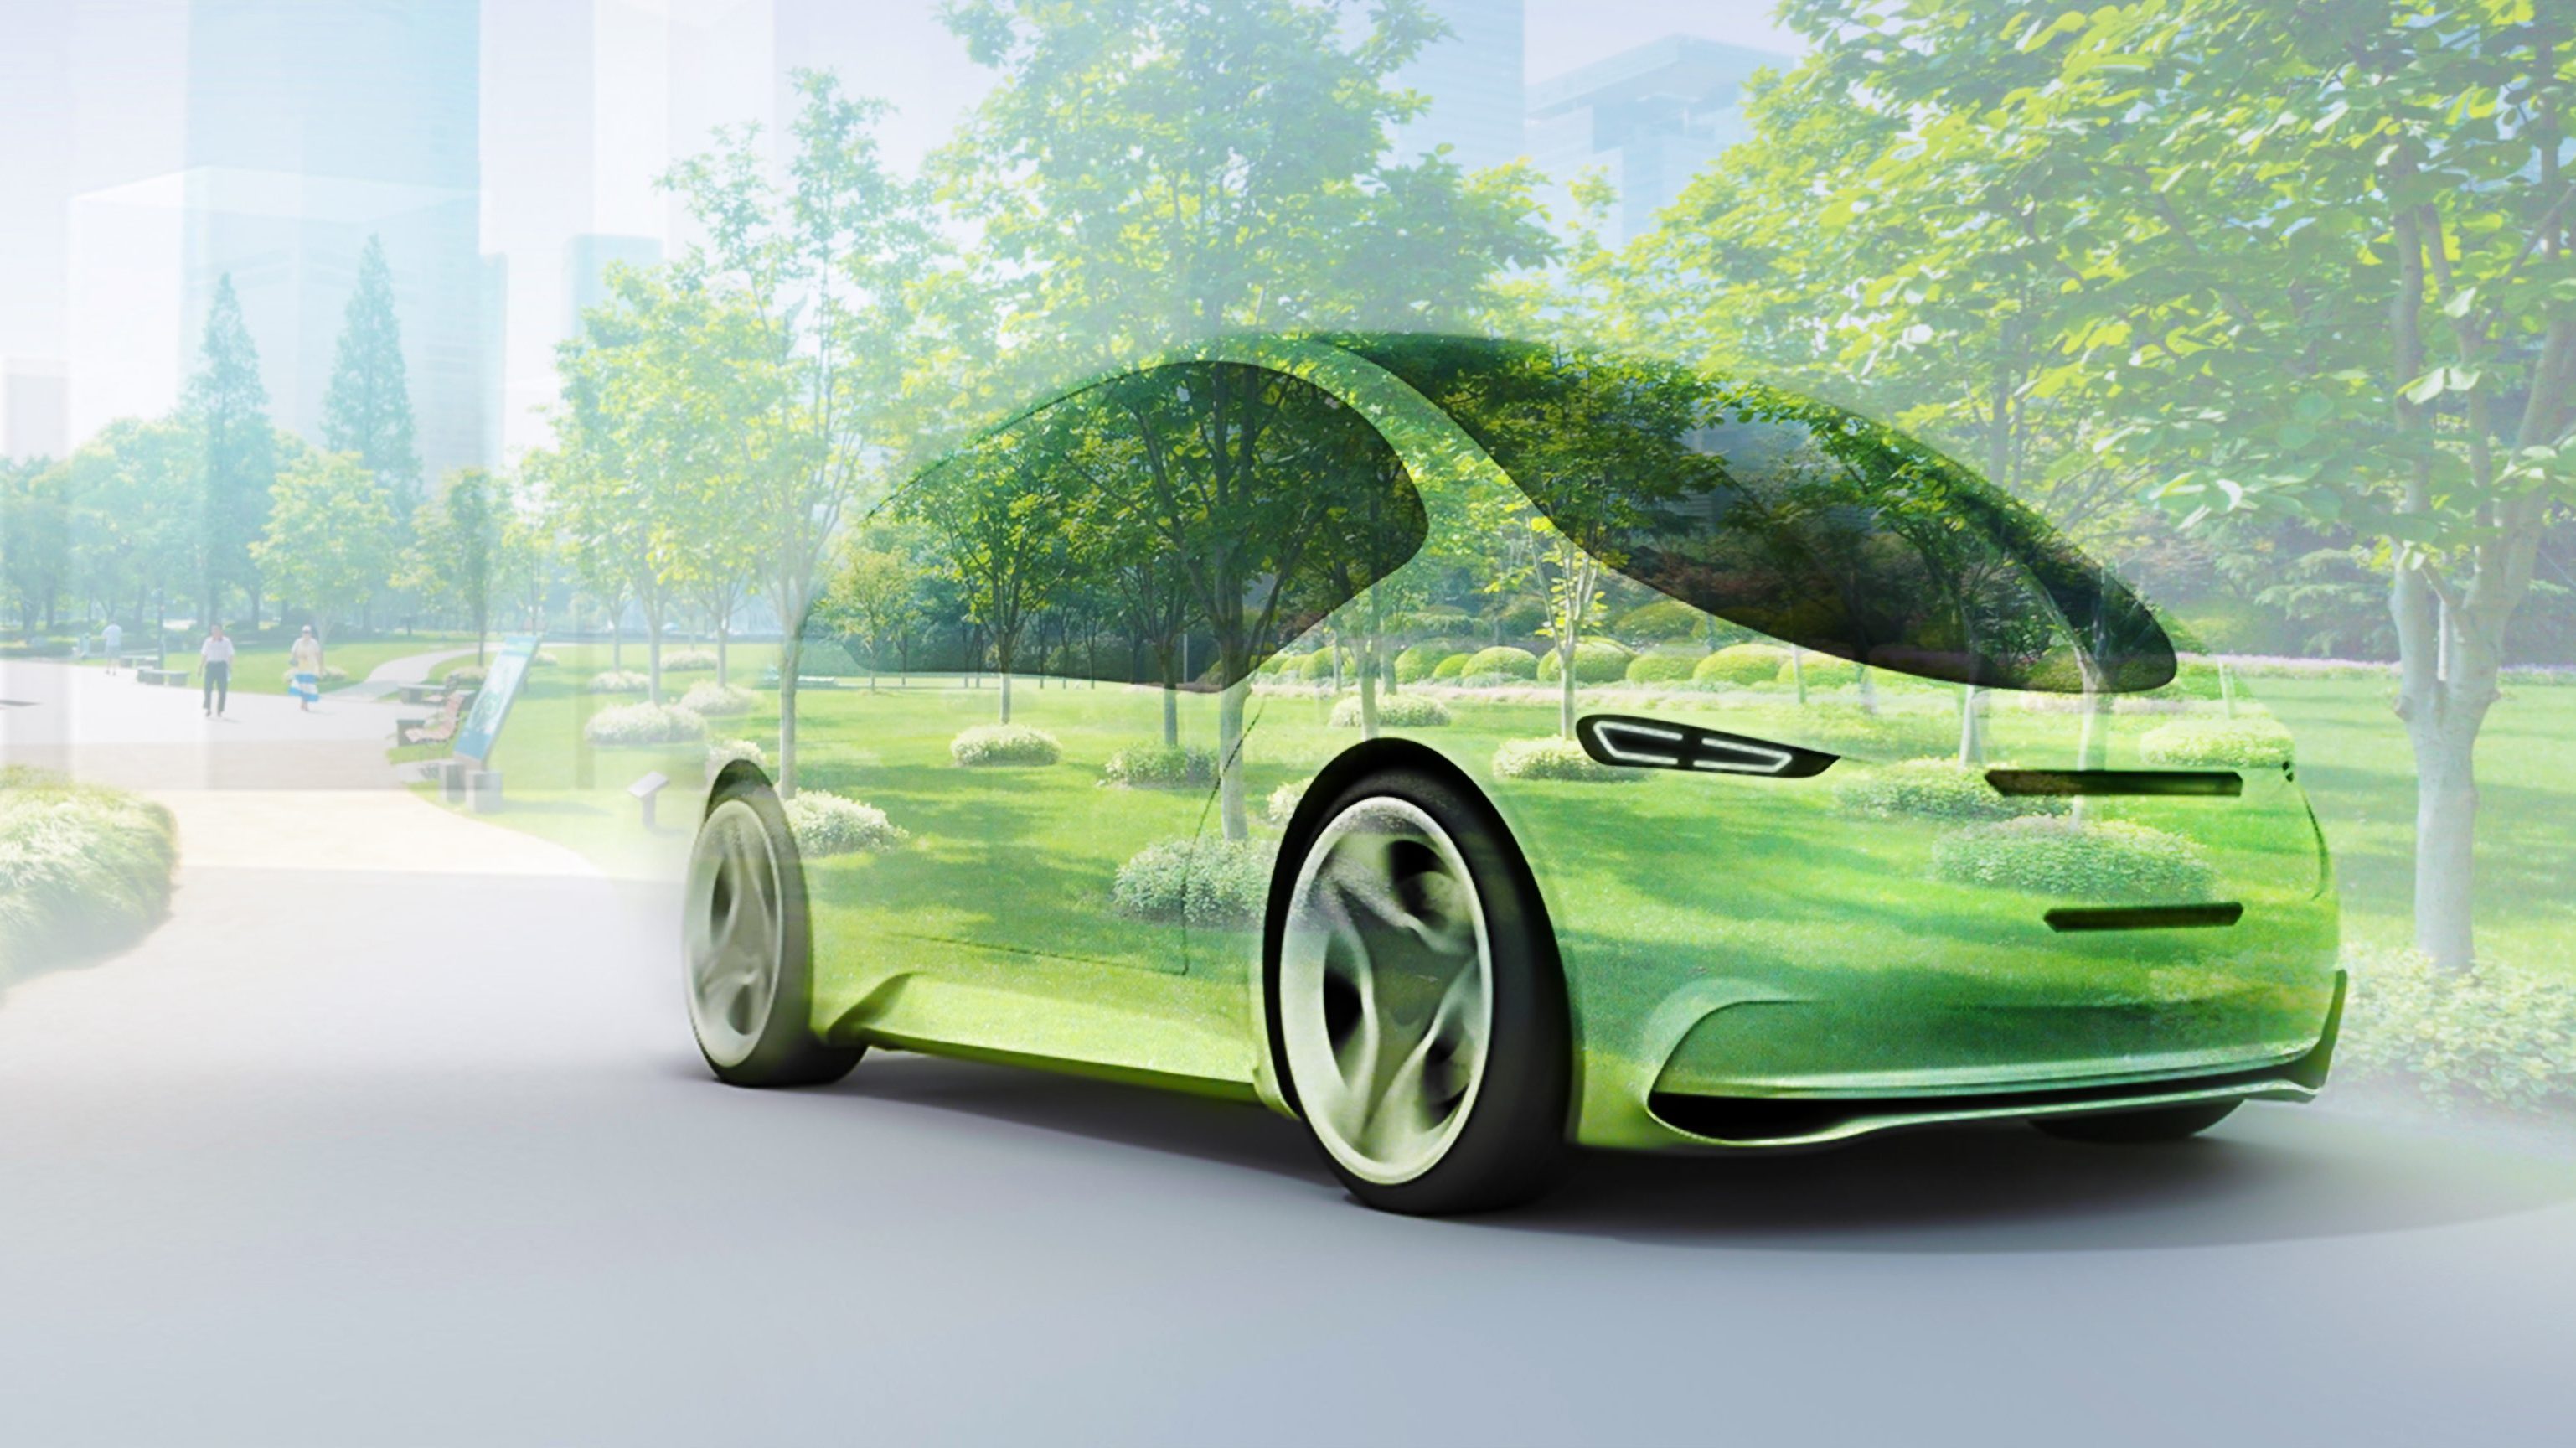 IAA 2019: Bosch si aggiudica 13 miliardi di euro di ordini nell’elettromobilità